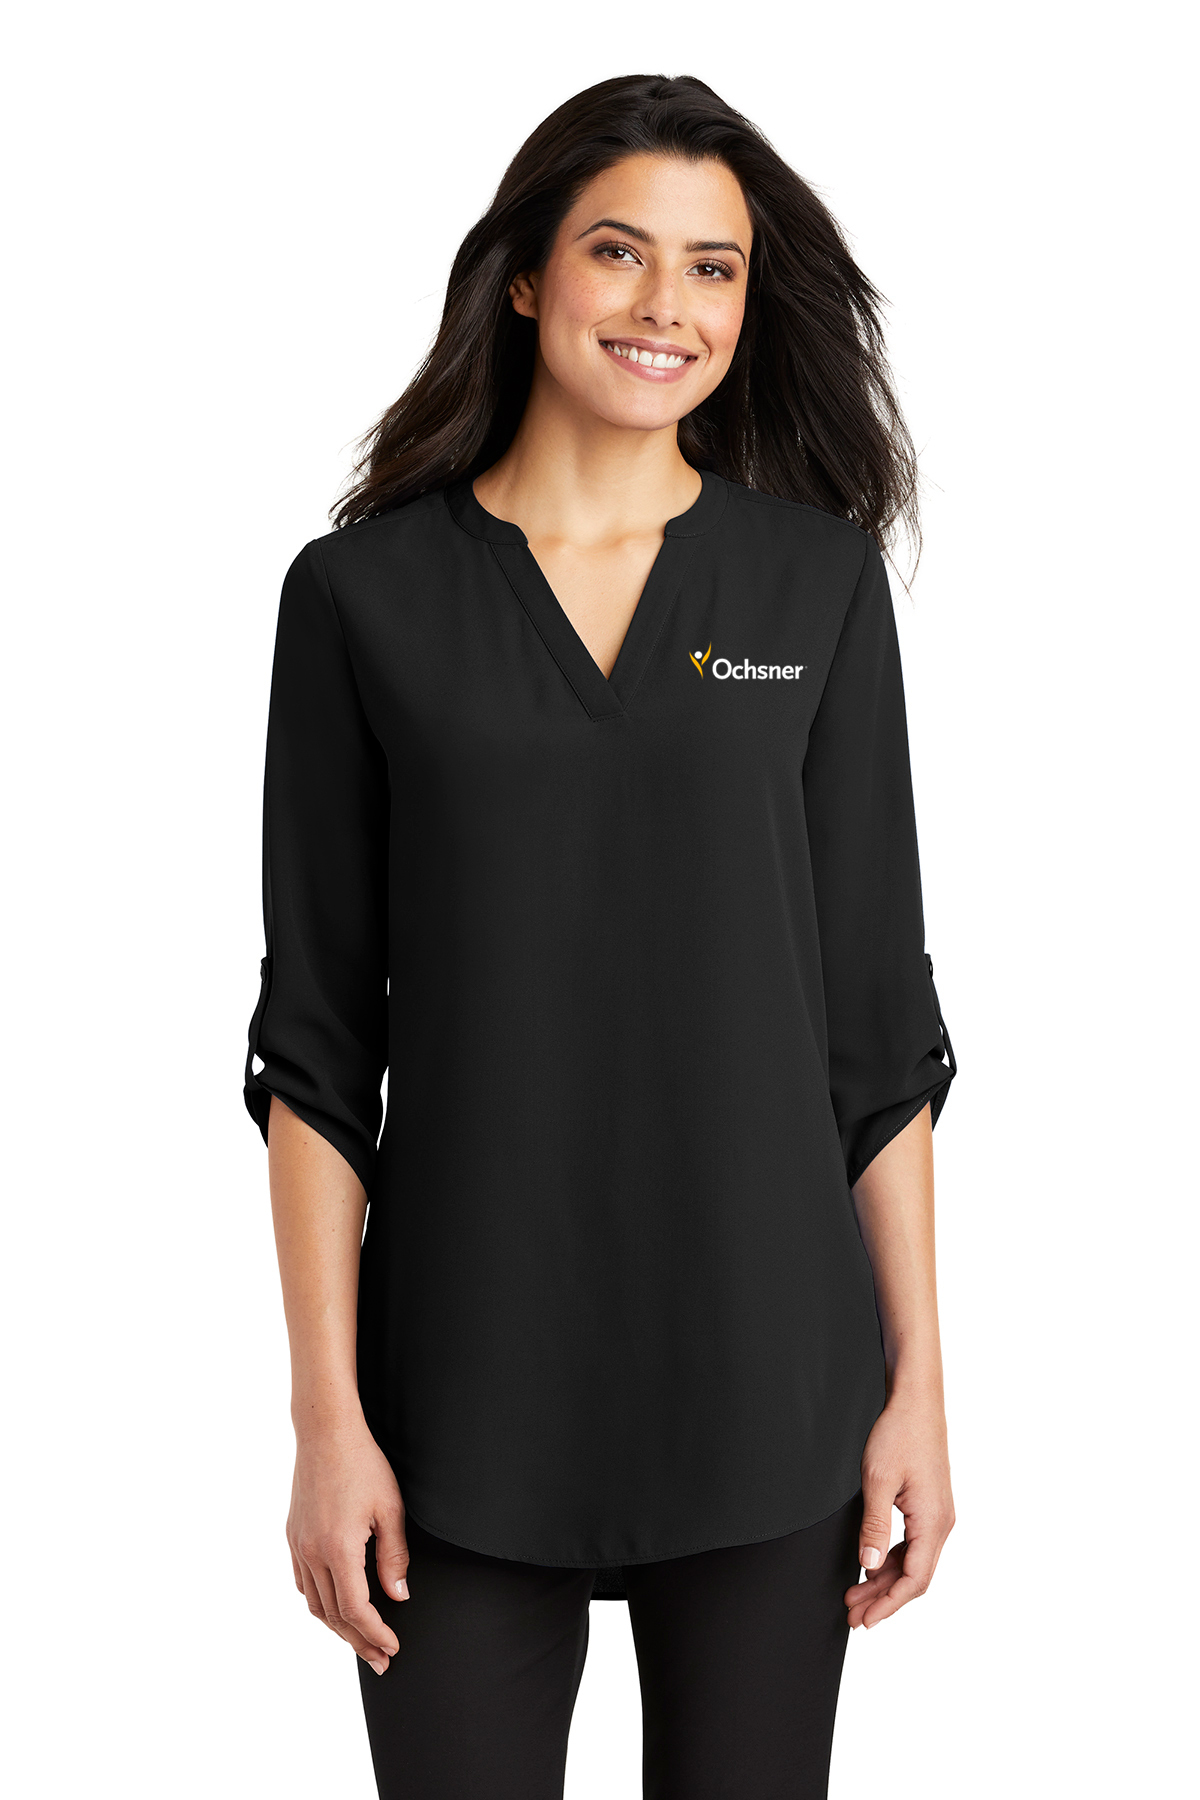 Port Authority Women's 3/4 Sleeve Tunic Blouse, Black, large image number 1